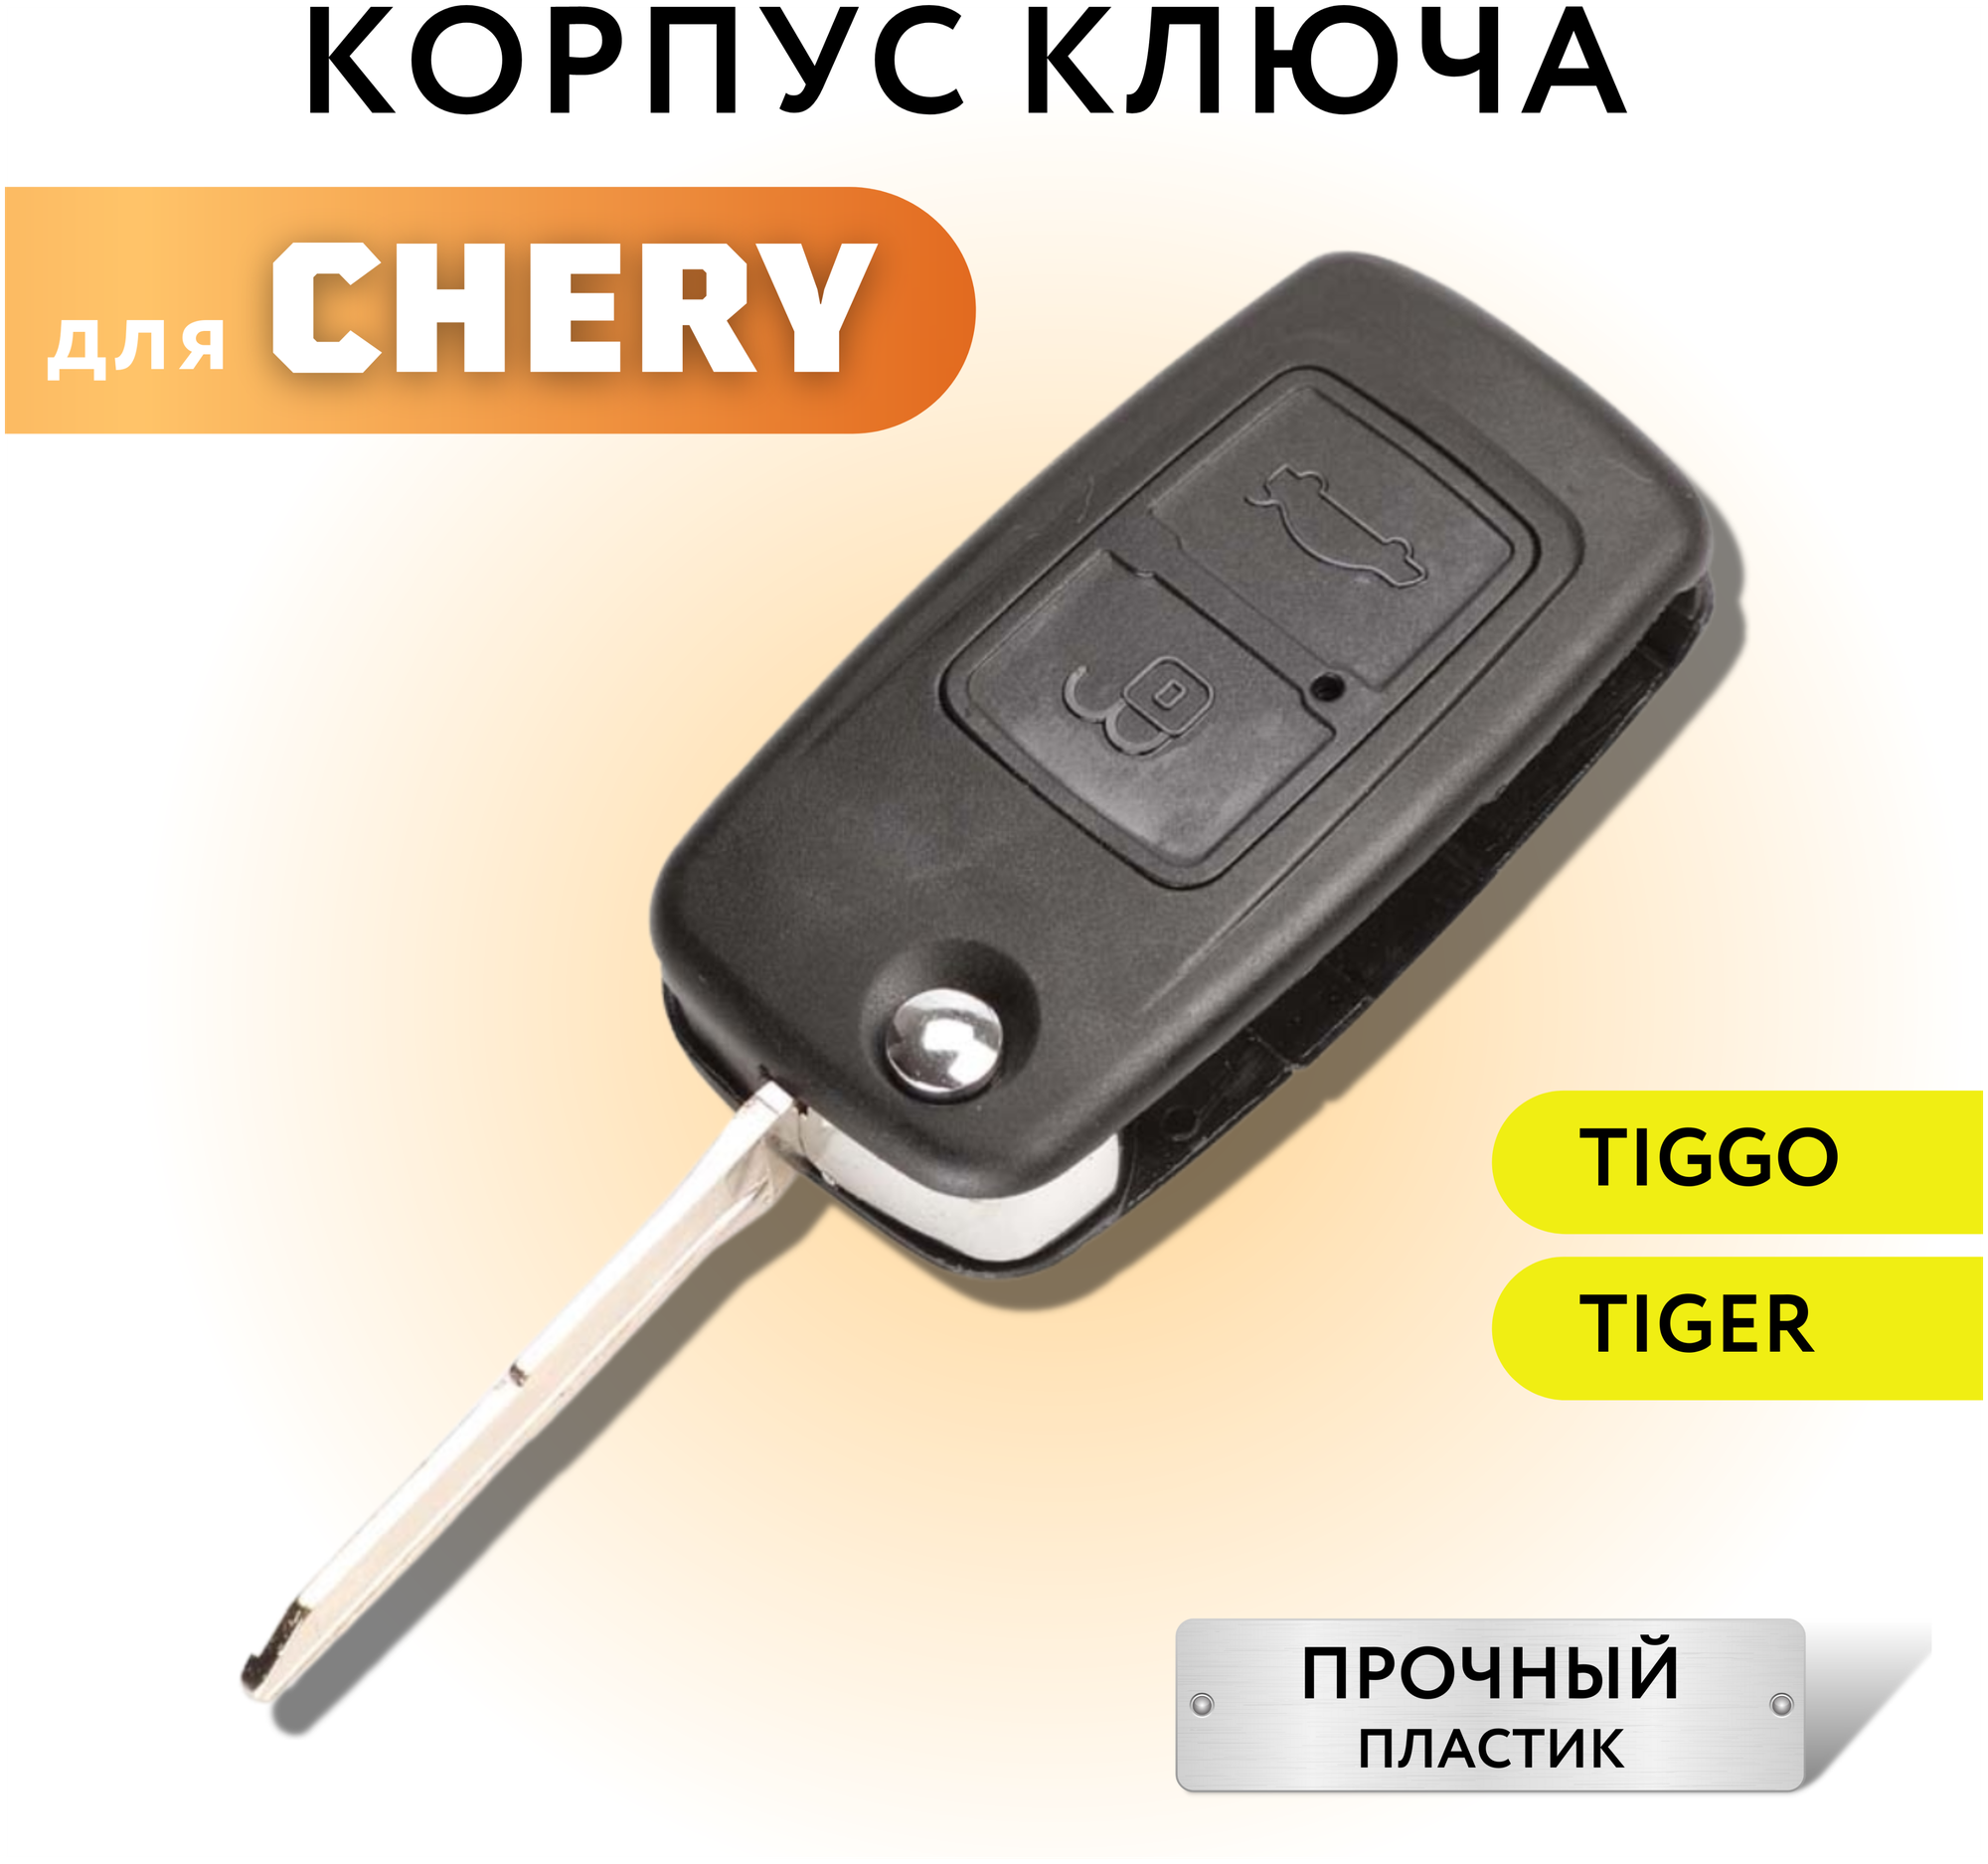 Корпус для ключа зажигания Чери А3/А5, Тигго, корпус для выкидного ключа Chery A3/A5, Tiggo